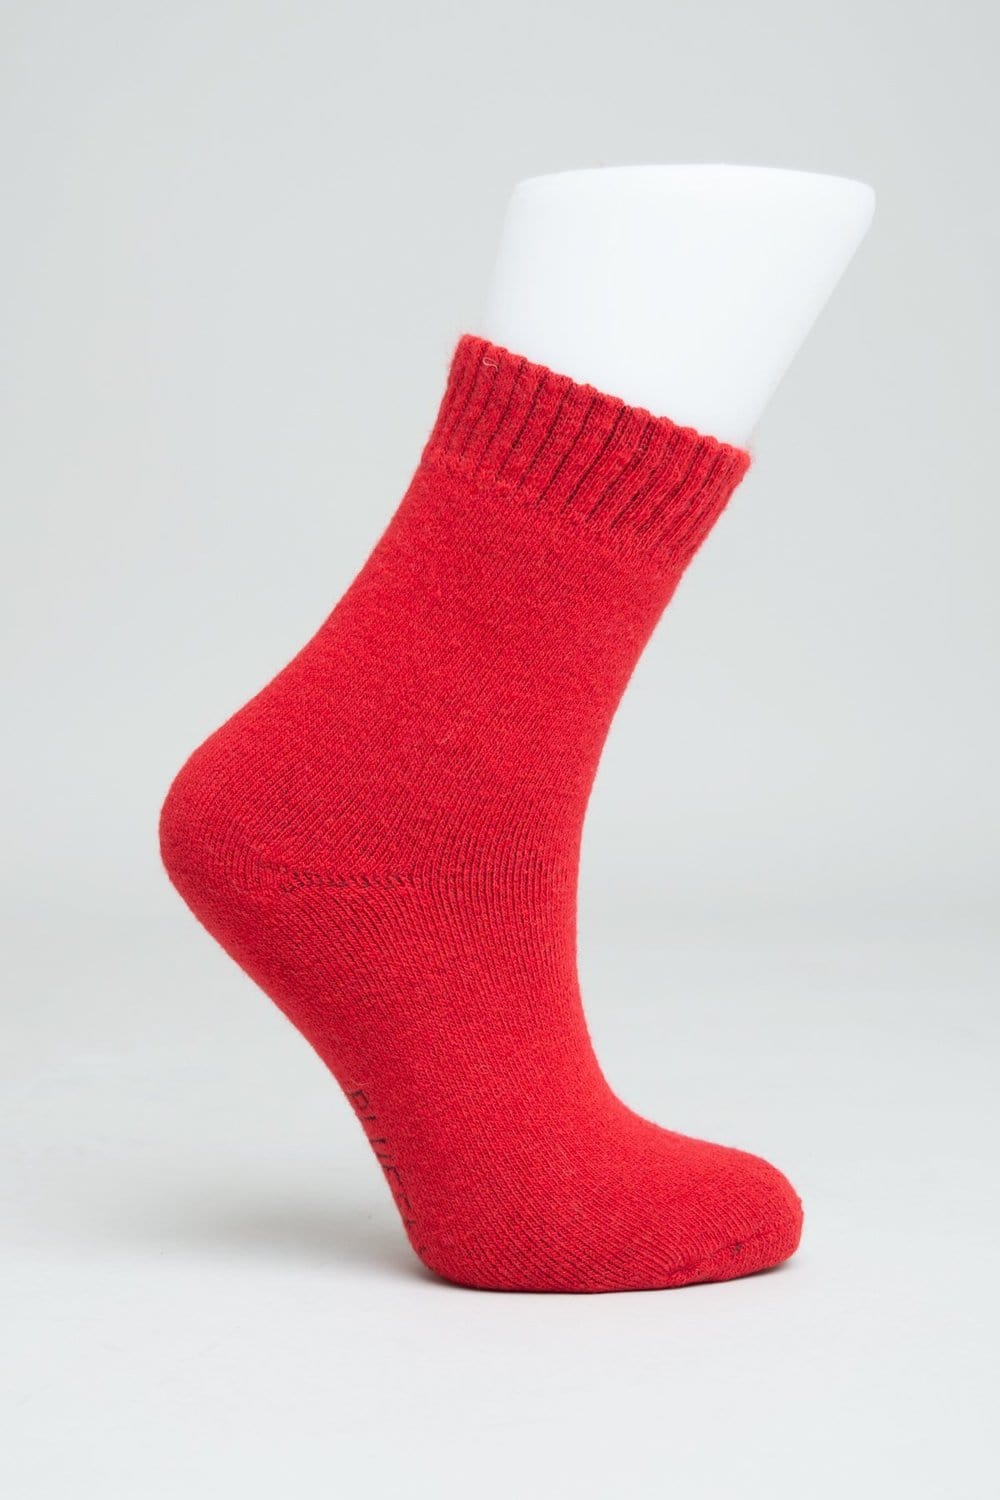 Blue Sky Women's Socks Cobalt / M Women's Socks - Merino Wool